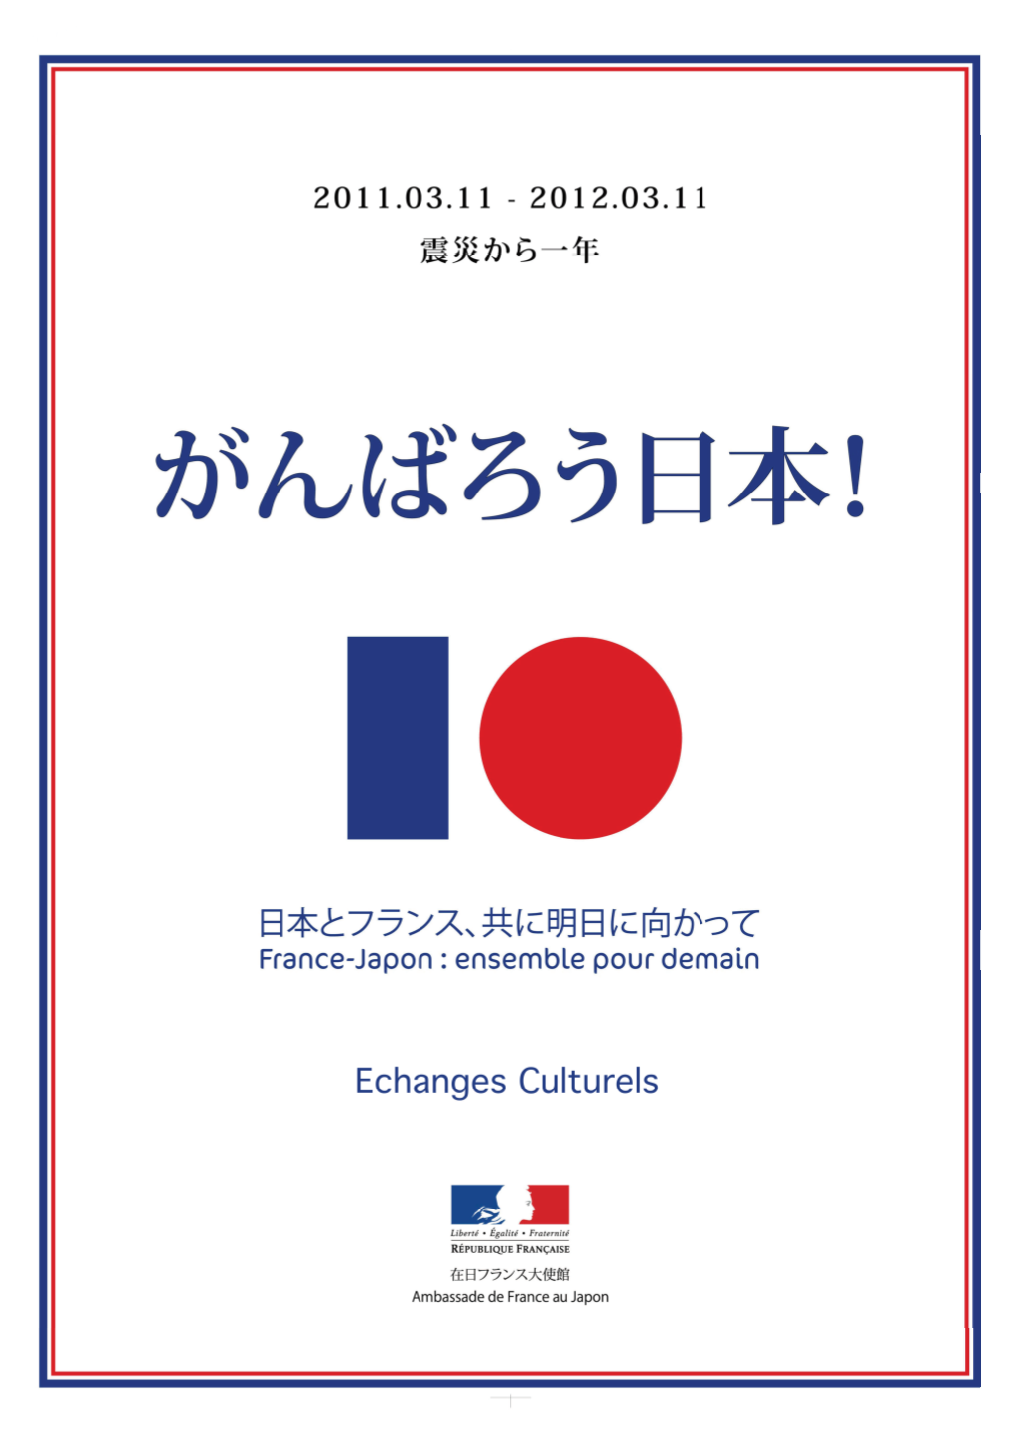 Note France Japon